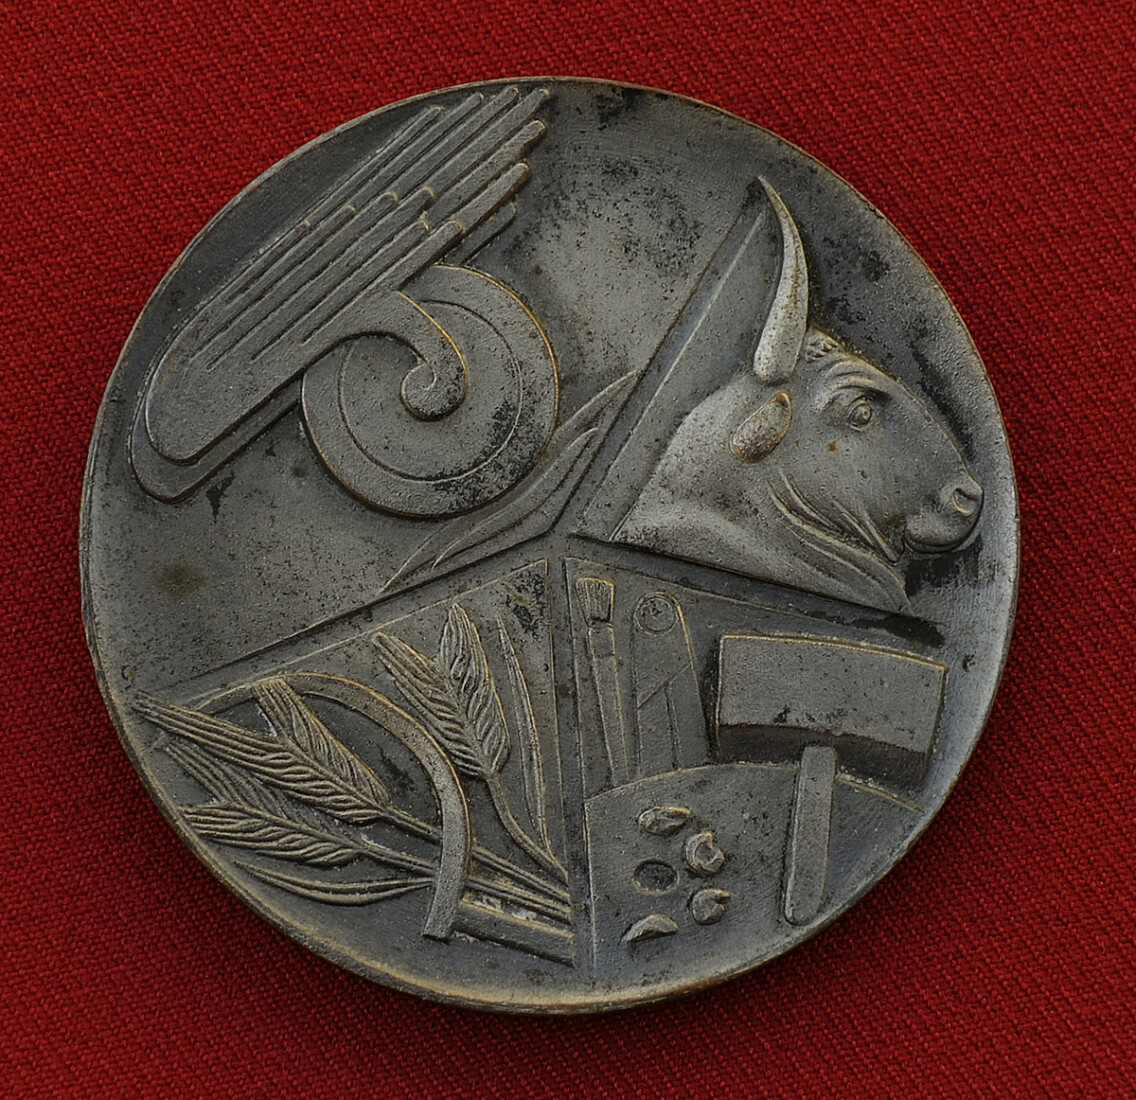 Μετάλλιο που απονεμήθηκε στον Γιαννούλη Χαλεπά για τη συμμετοχή του στην Α΄ Παγκυκλαδική Έκθεση στη Σύρο το 1936